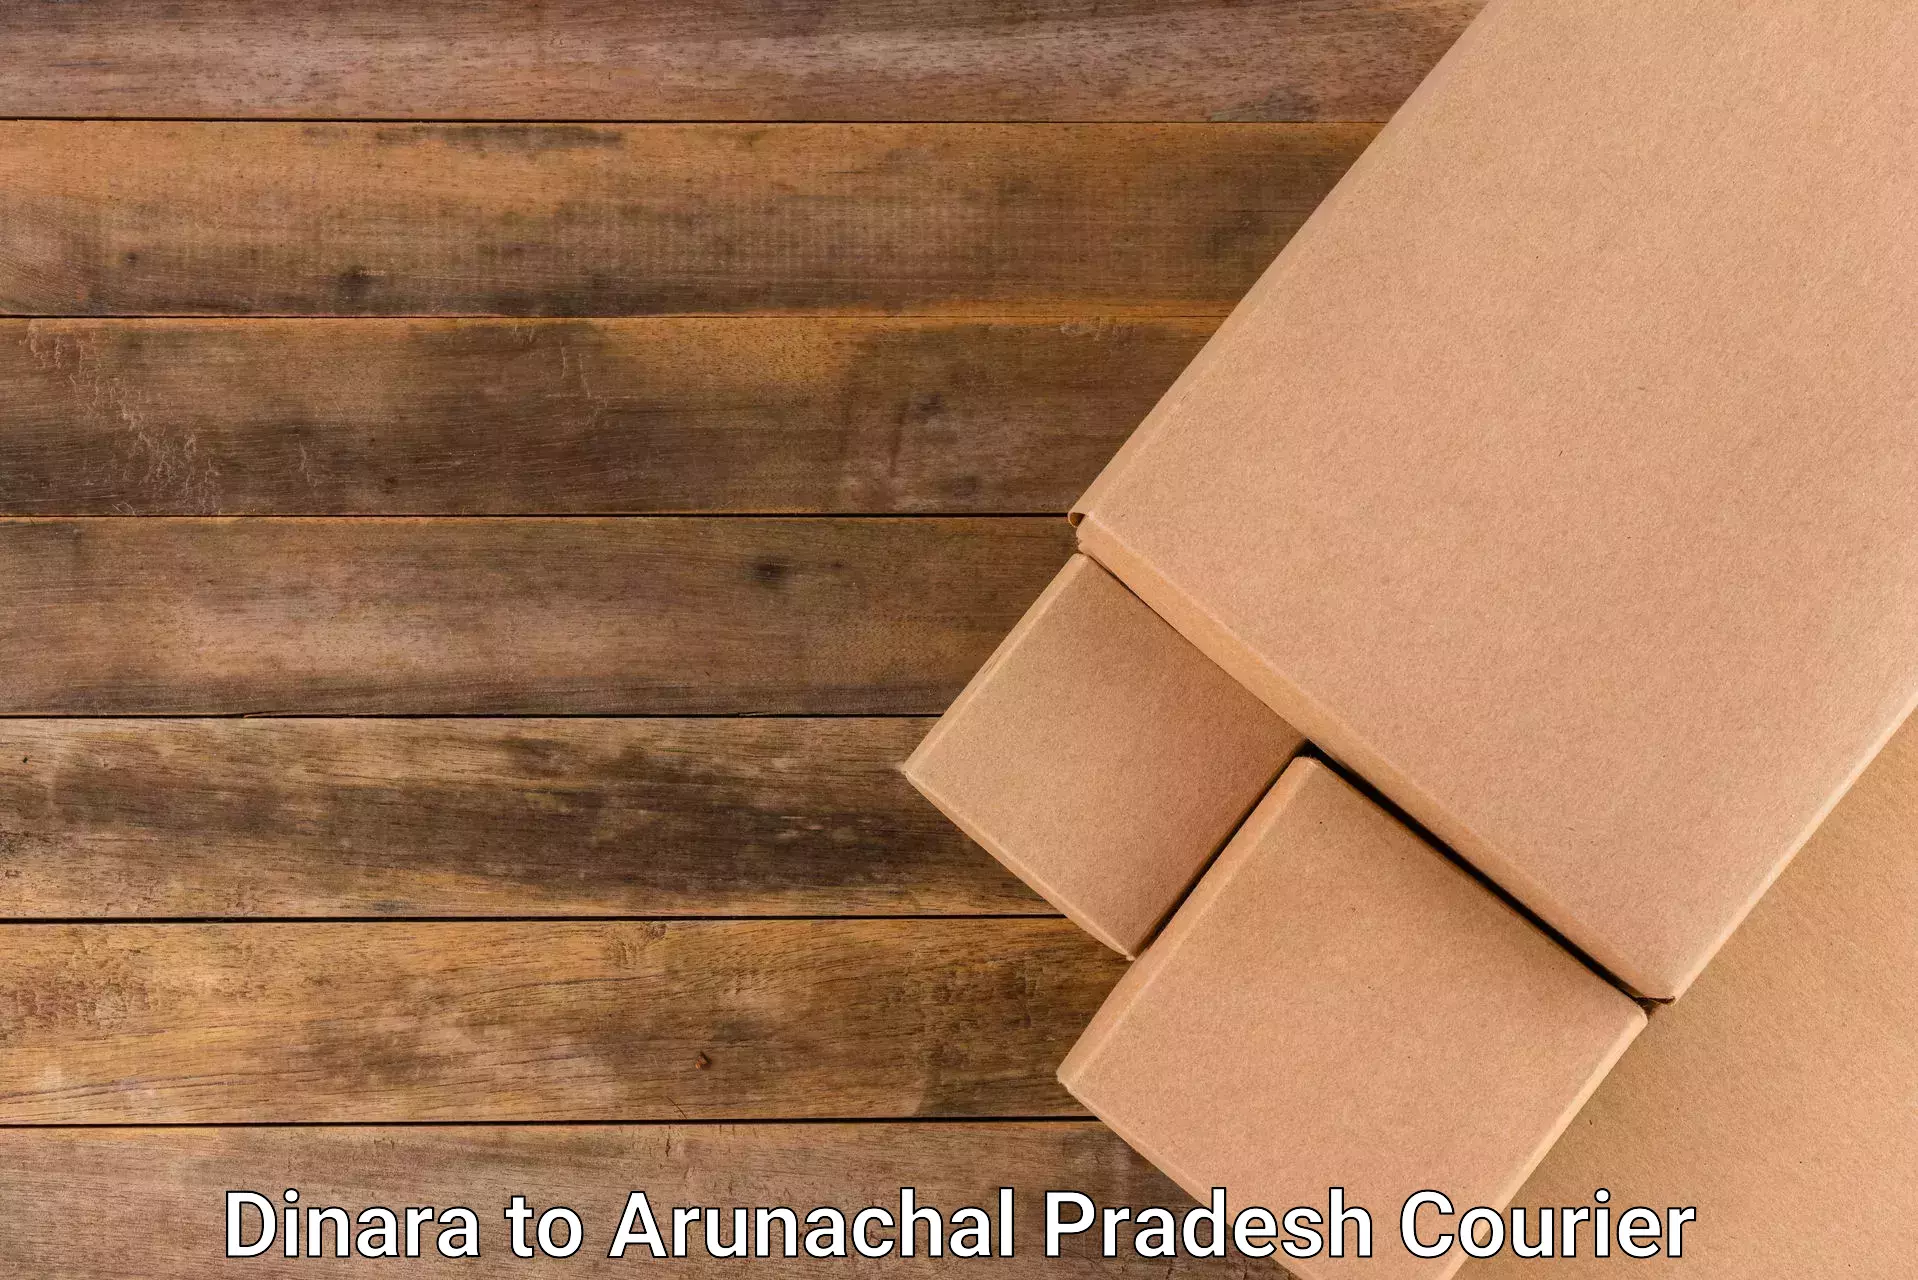 Flexible delivery schedules Dinara to Arunachal Pradesh